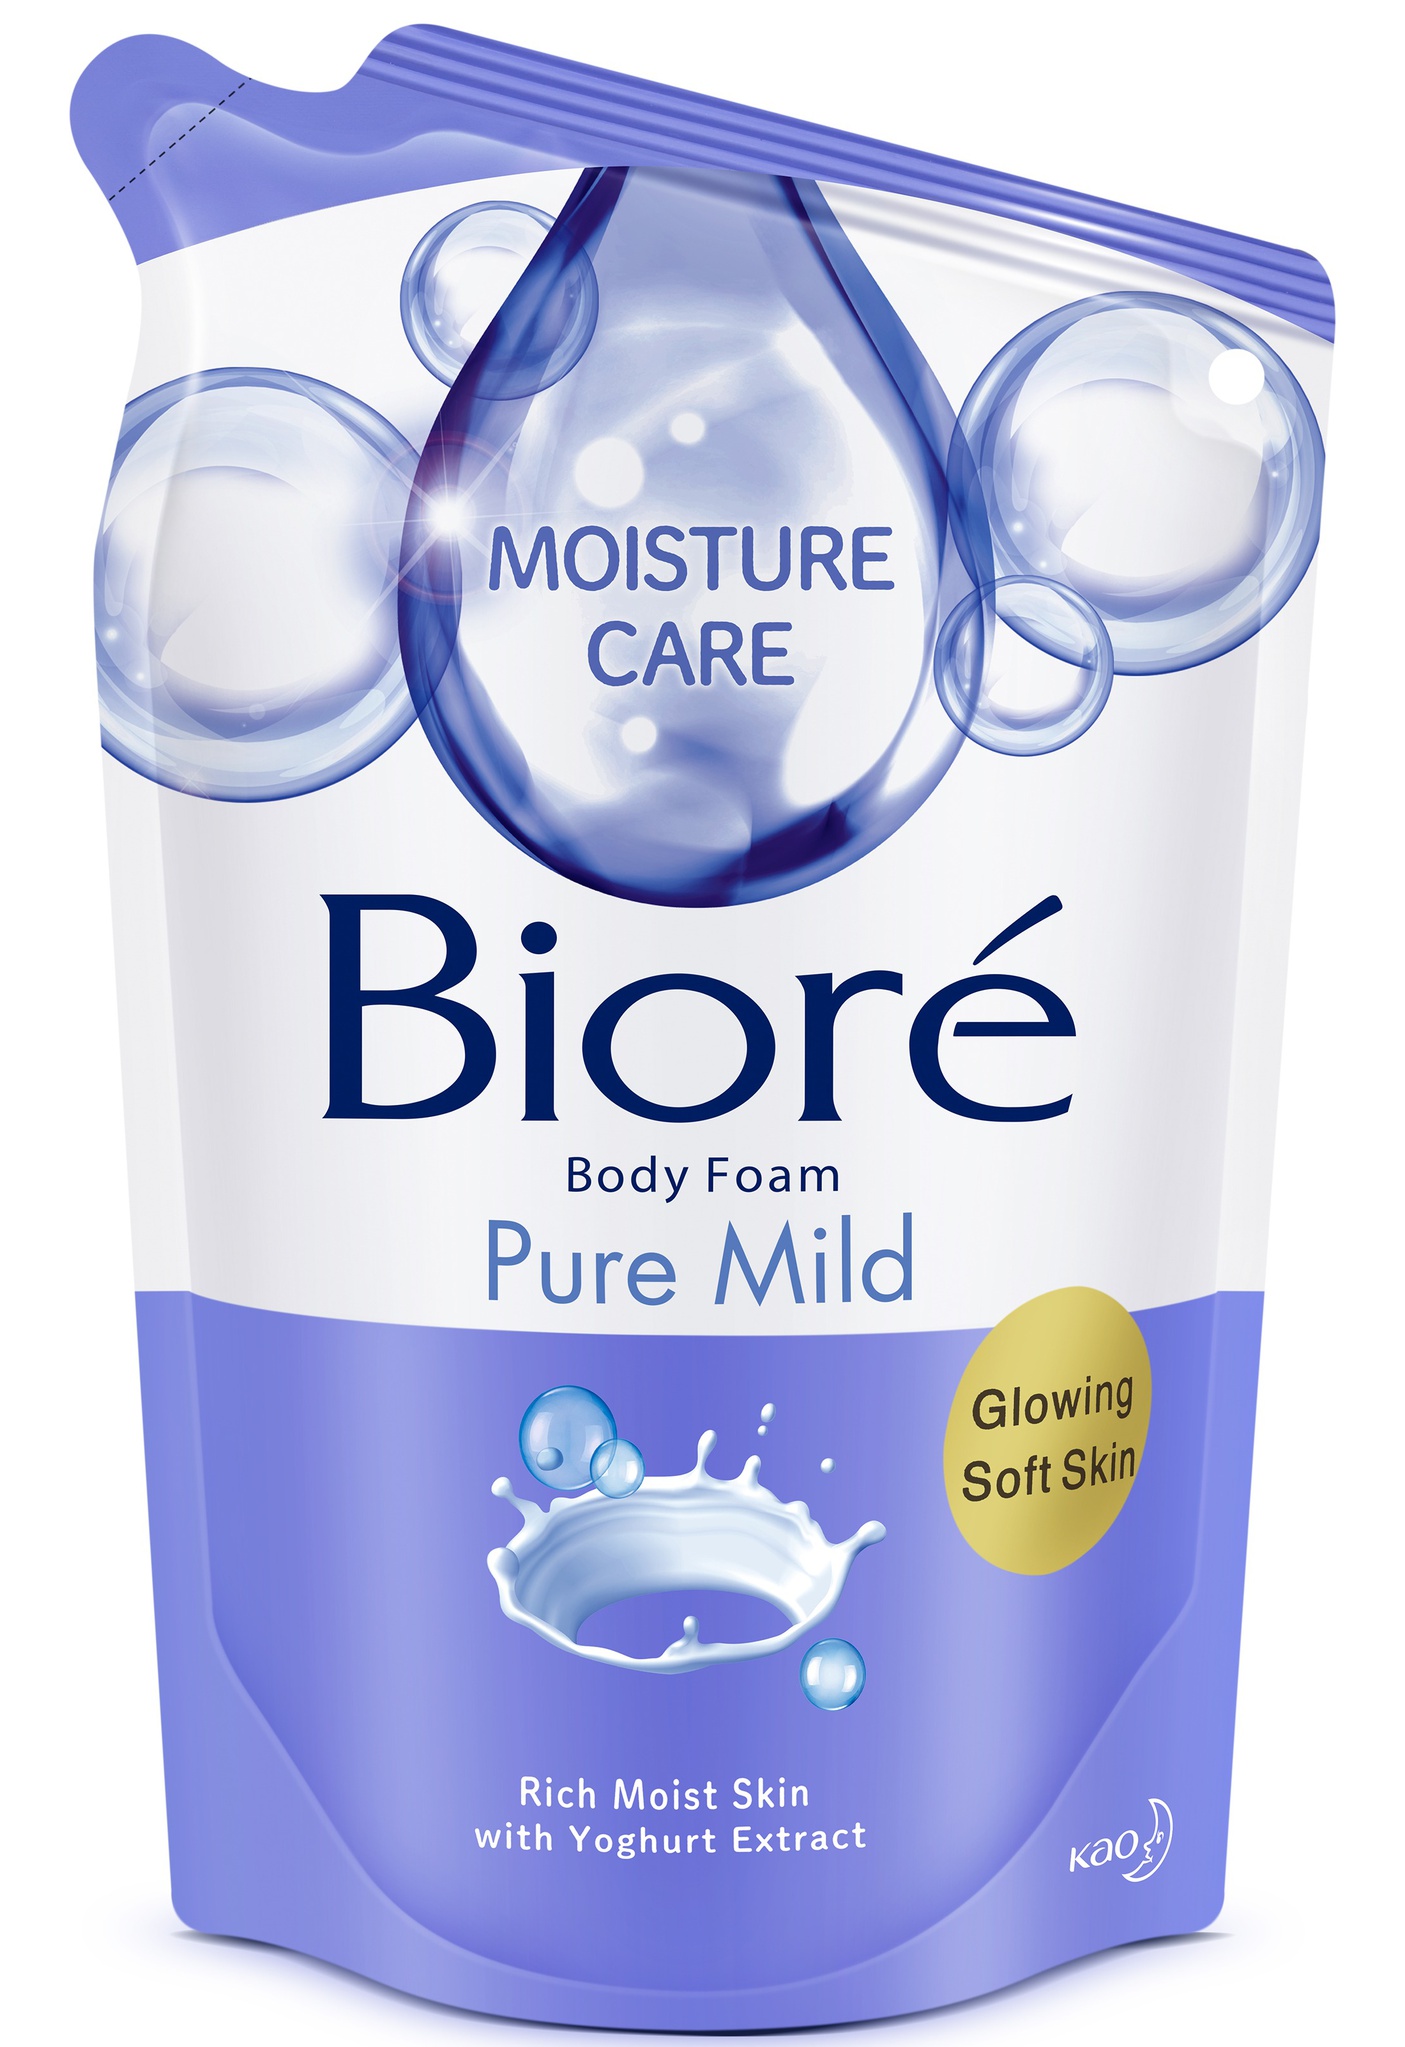 Biore Body Foam Pure Mild